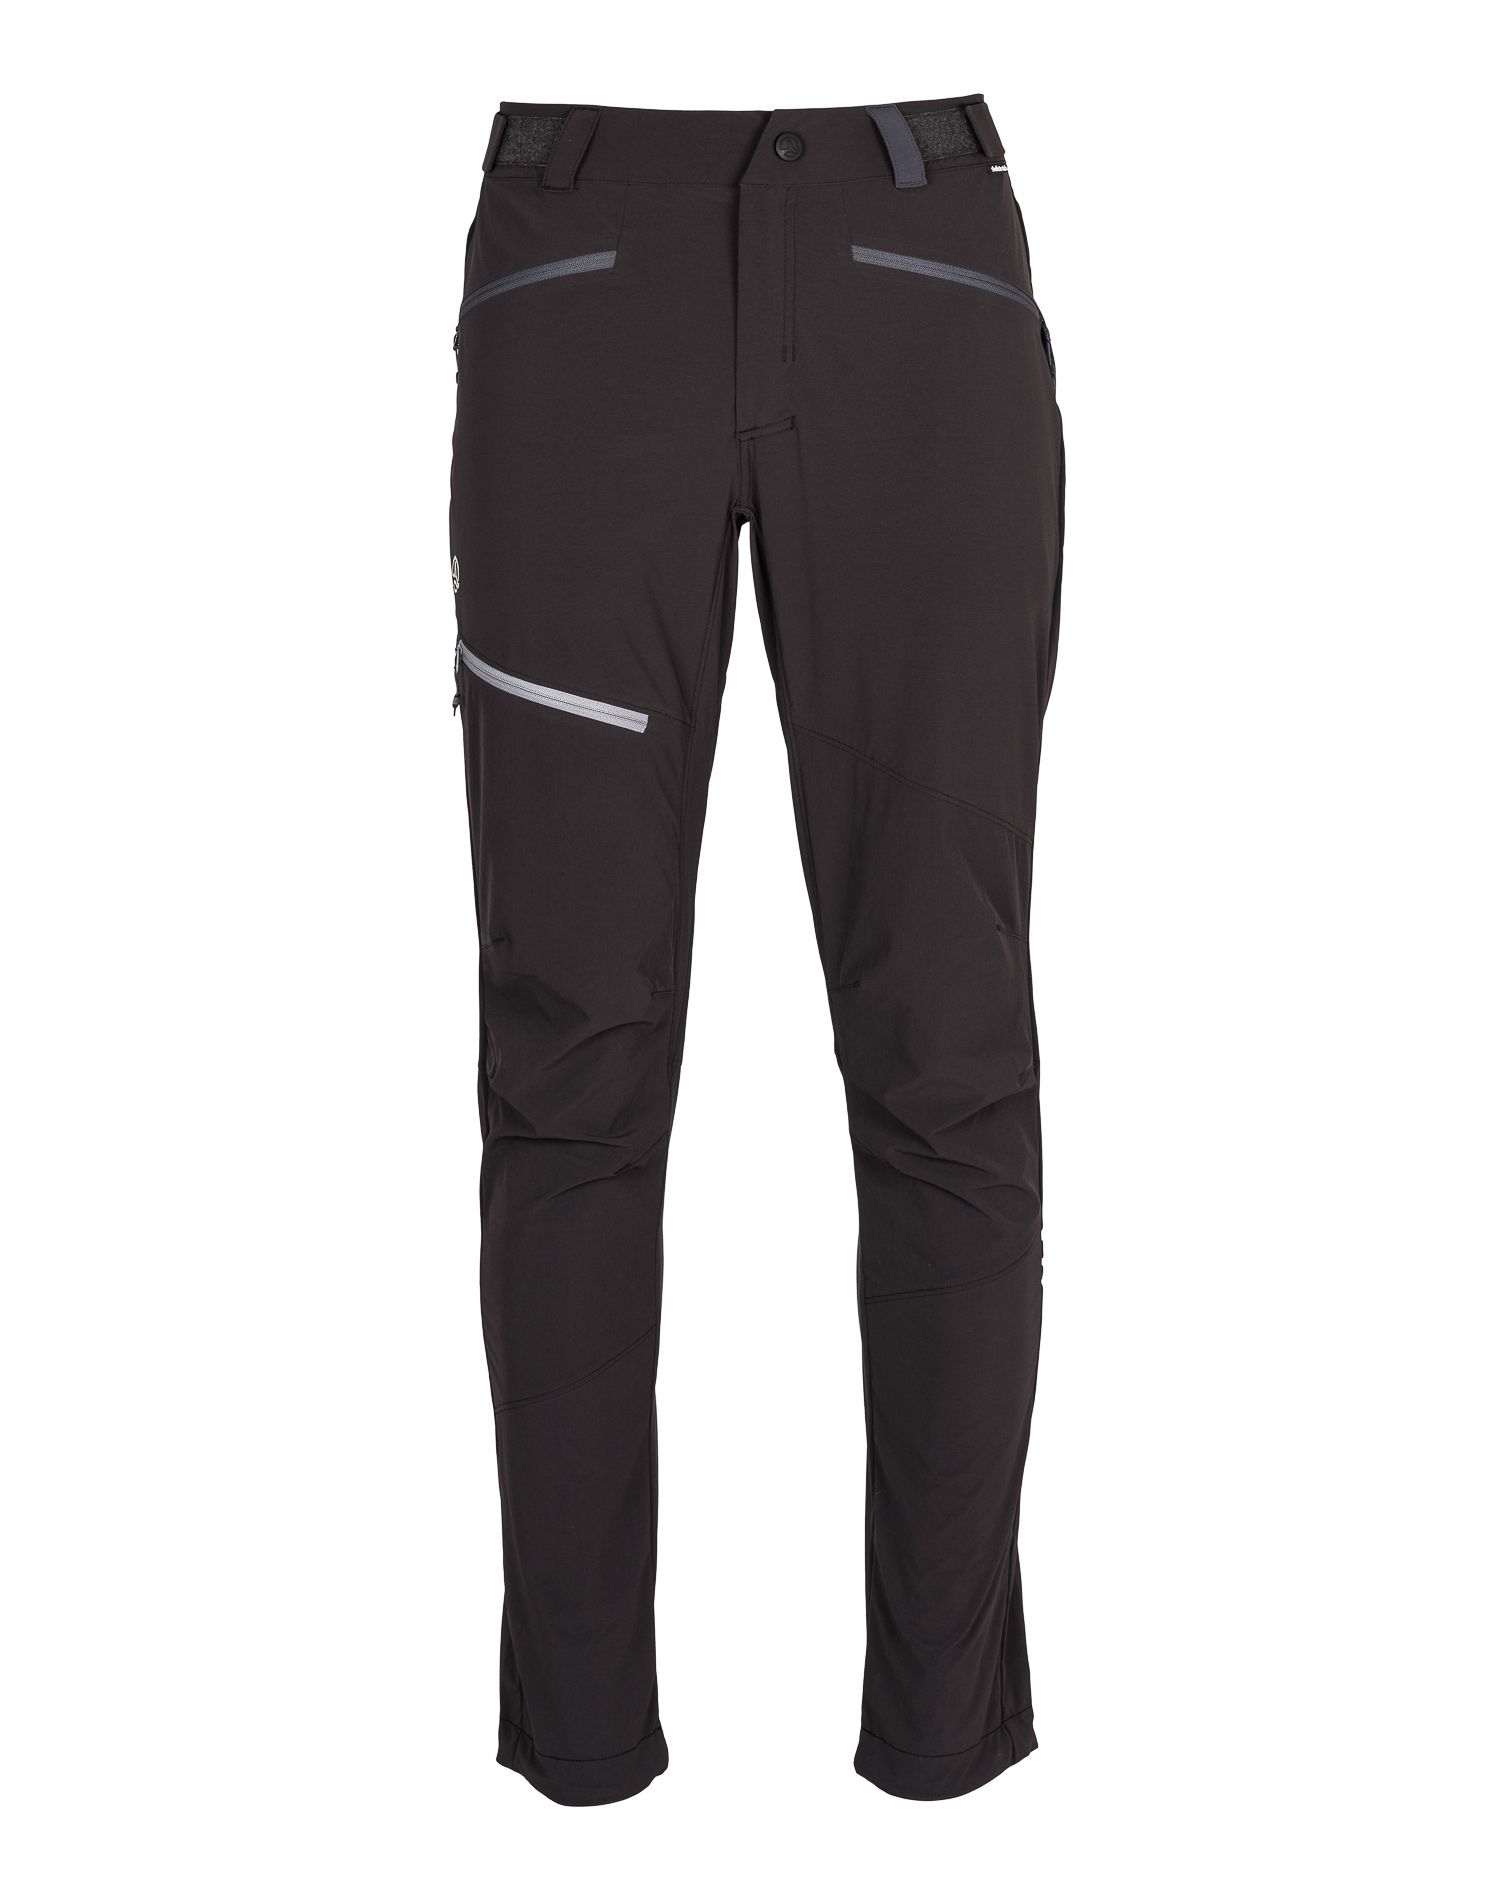 Спортивные брюки мужские Ternua Rotor Pt M черные L